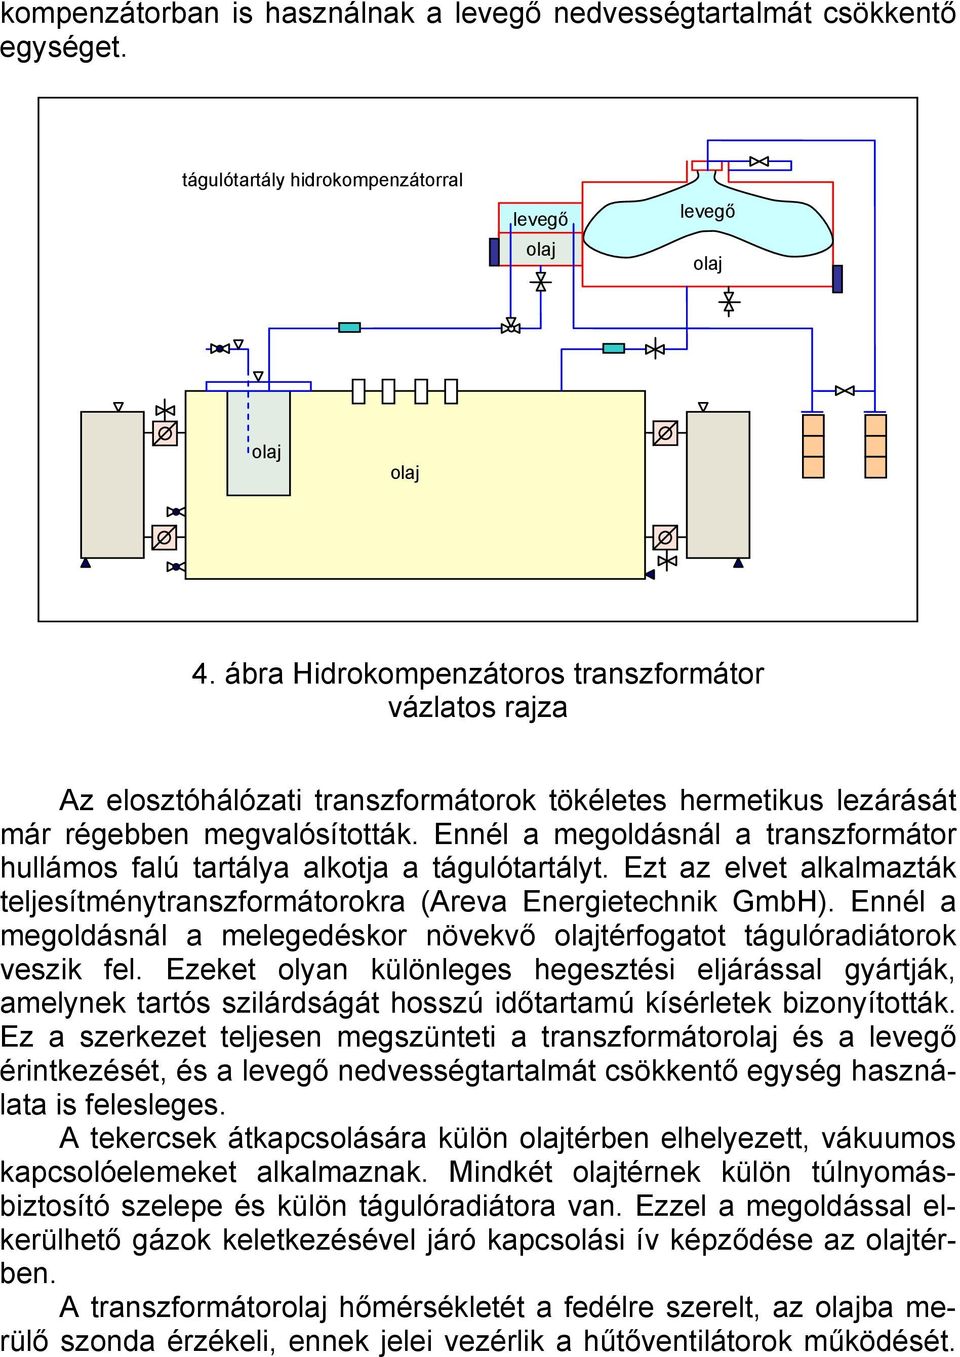 Ennél a megoldásnál a transzformátor hullámos falú tartálya alkotja a tágulótartályt. Ezt az elvet alkalmazták teljesítménytranszformátorokra (Areva Energietechnik GmbH).